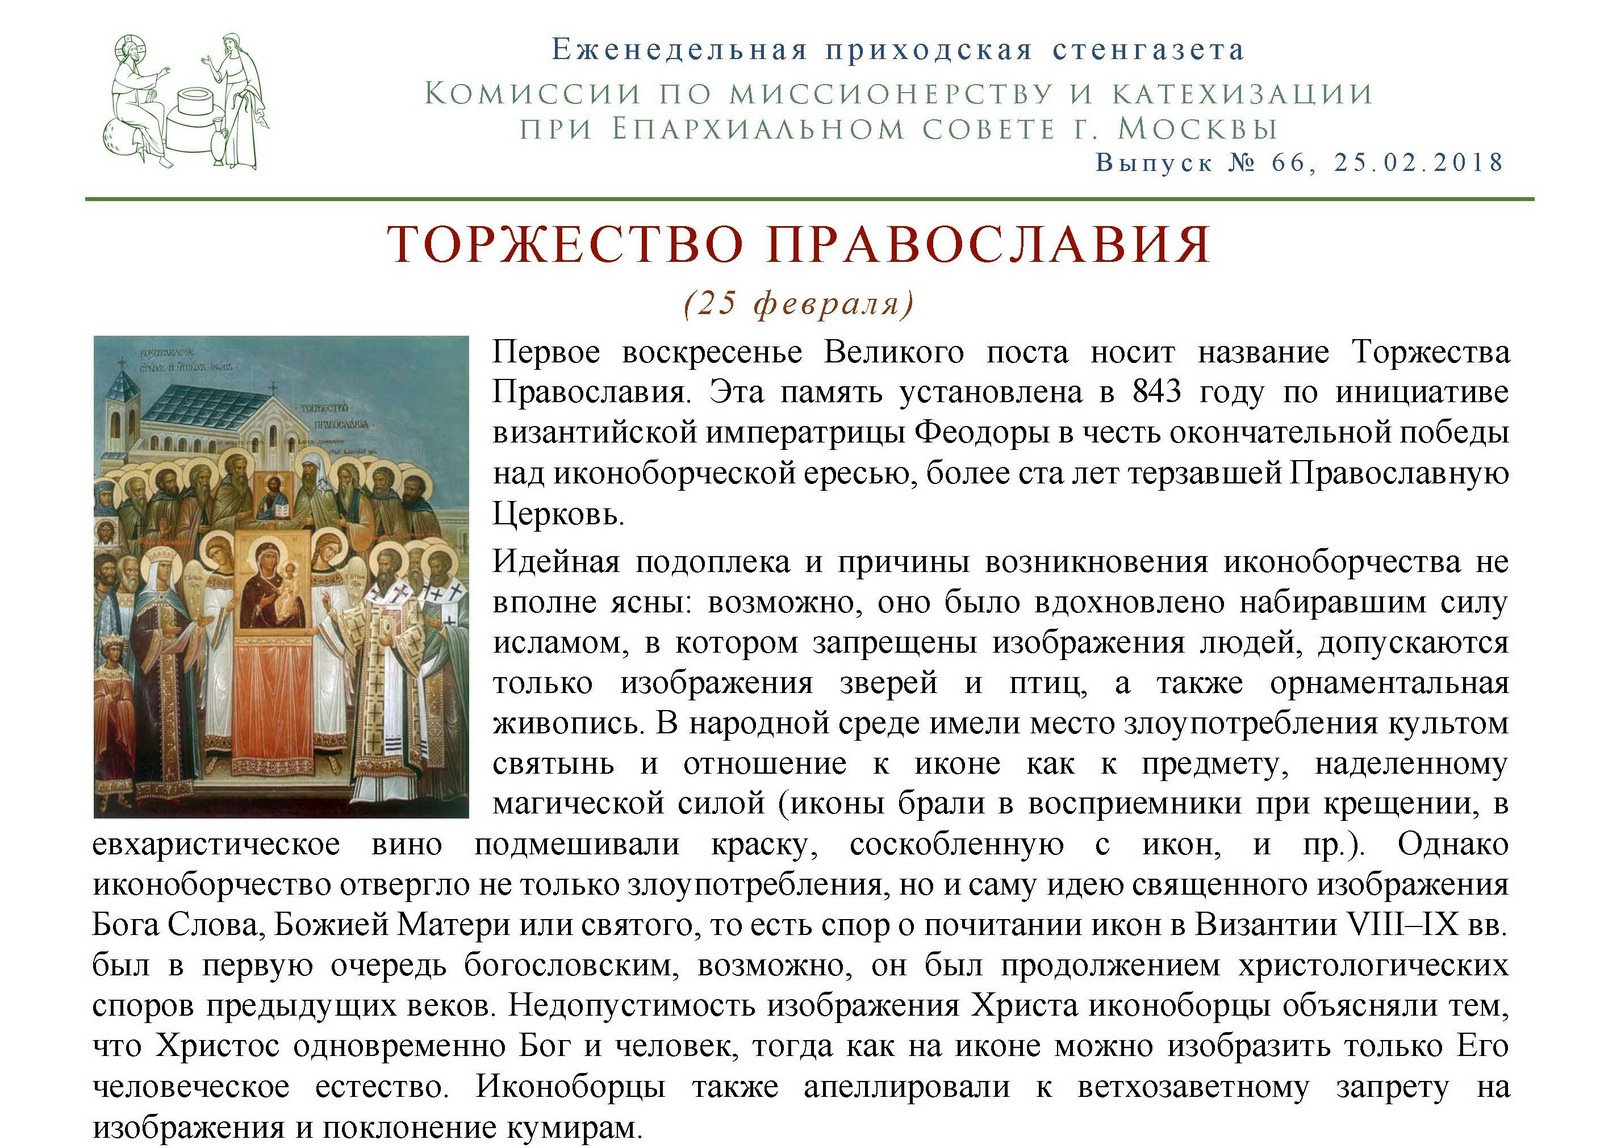 Последование недели православия